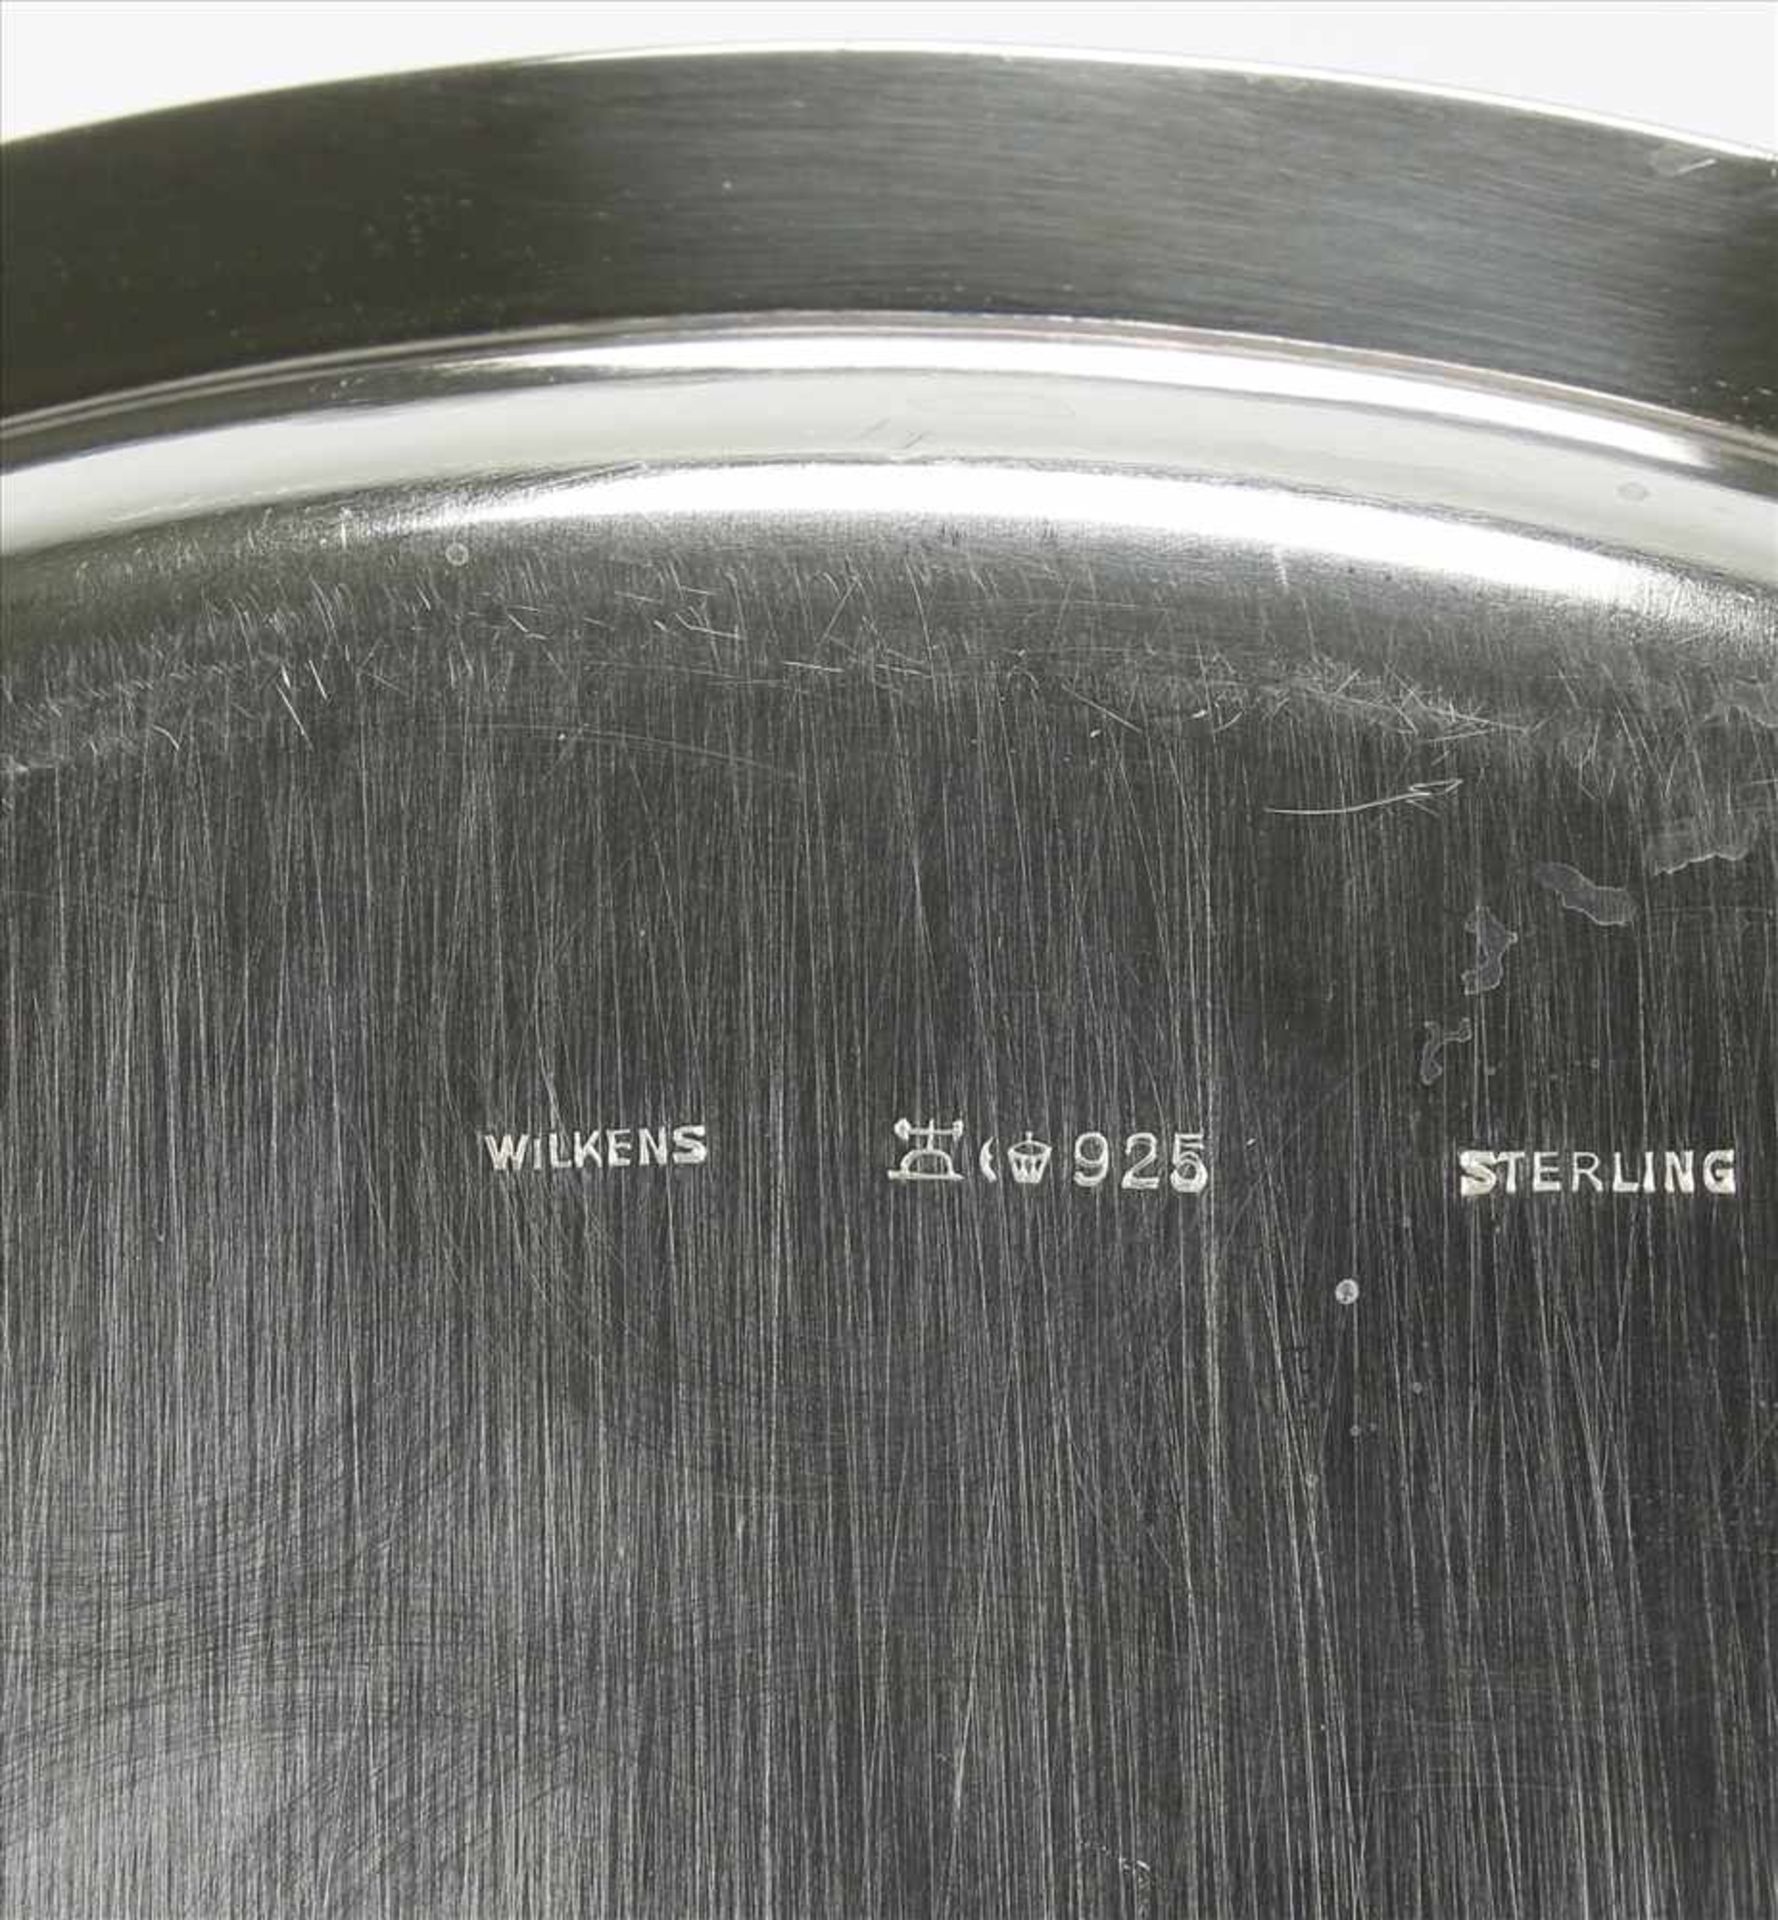 SilbertablettDeutsch. Silber 925 punziert und Herstellerpunze Wilkens. Durchmesser ca. 24 cm, Höhe - Bild 3 aus 4